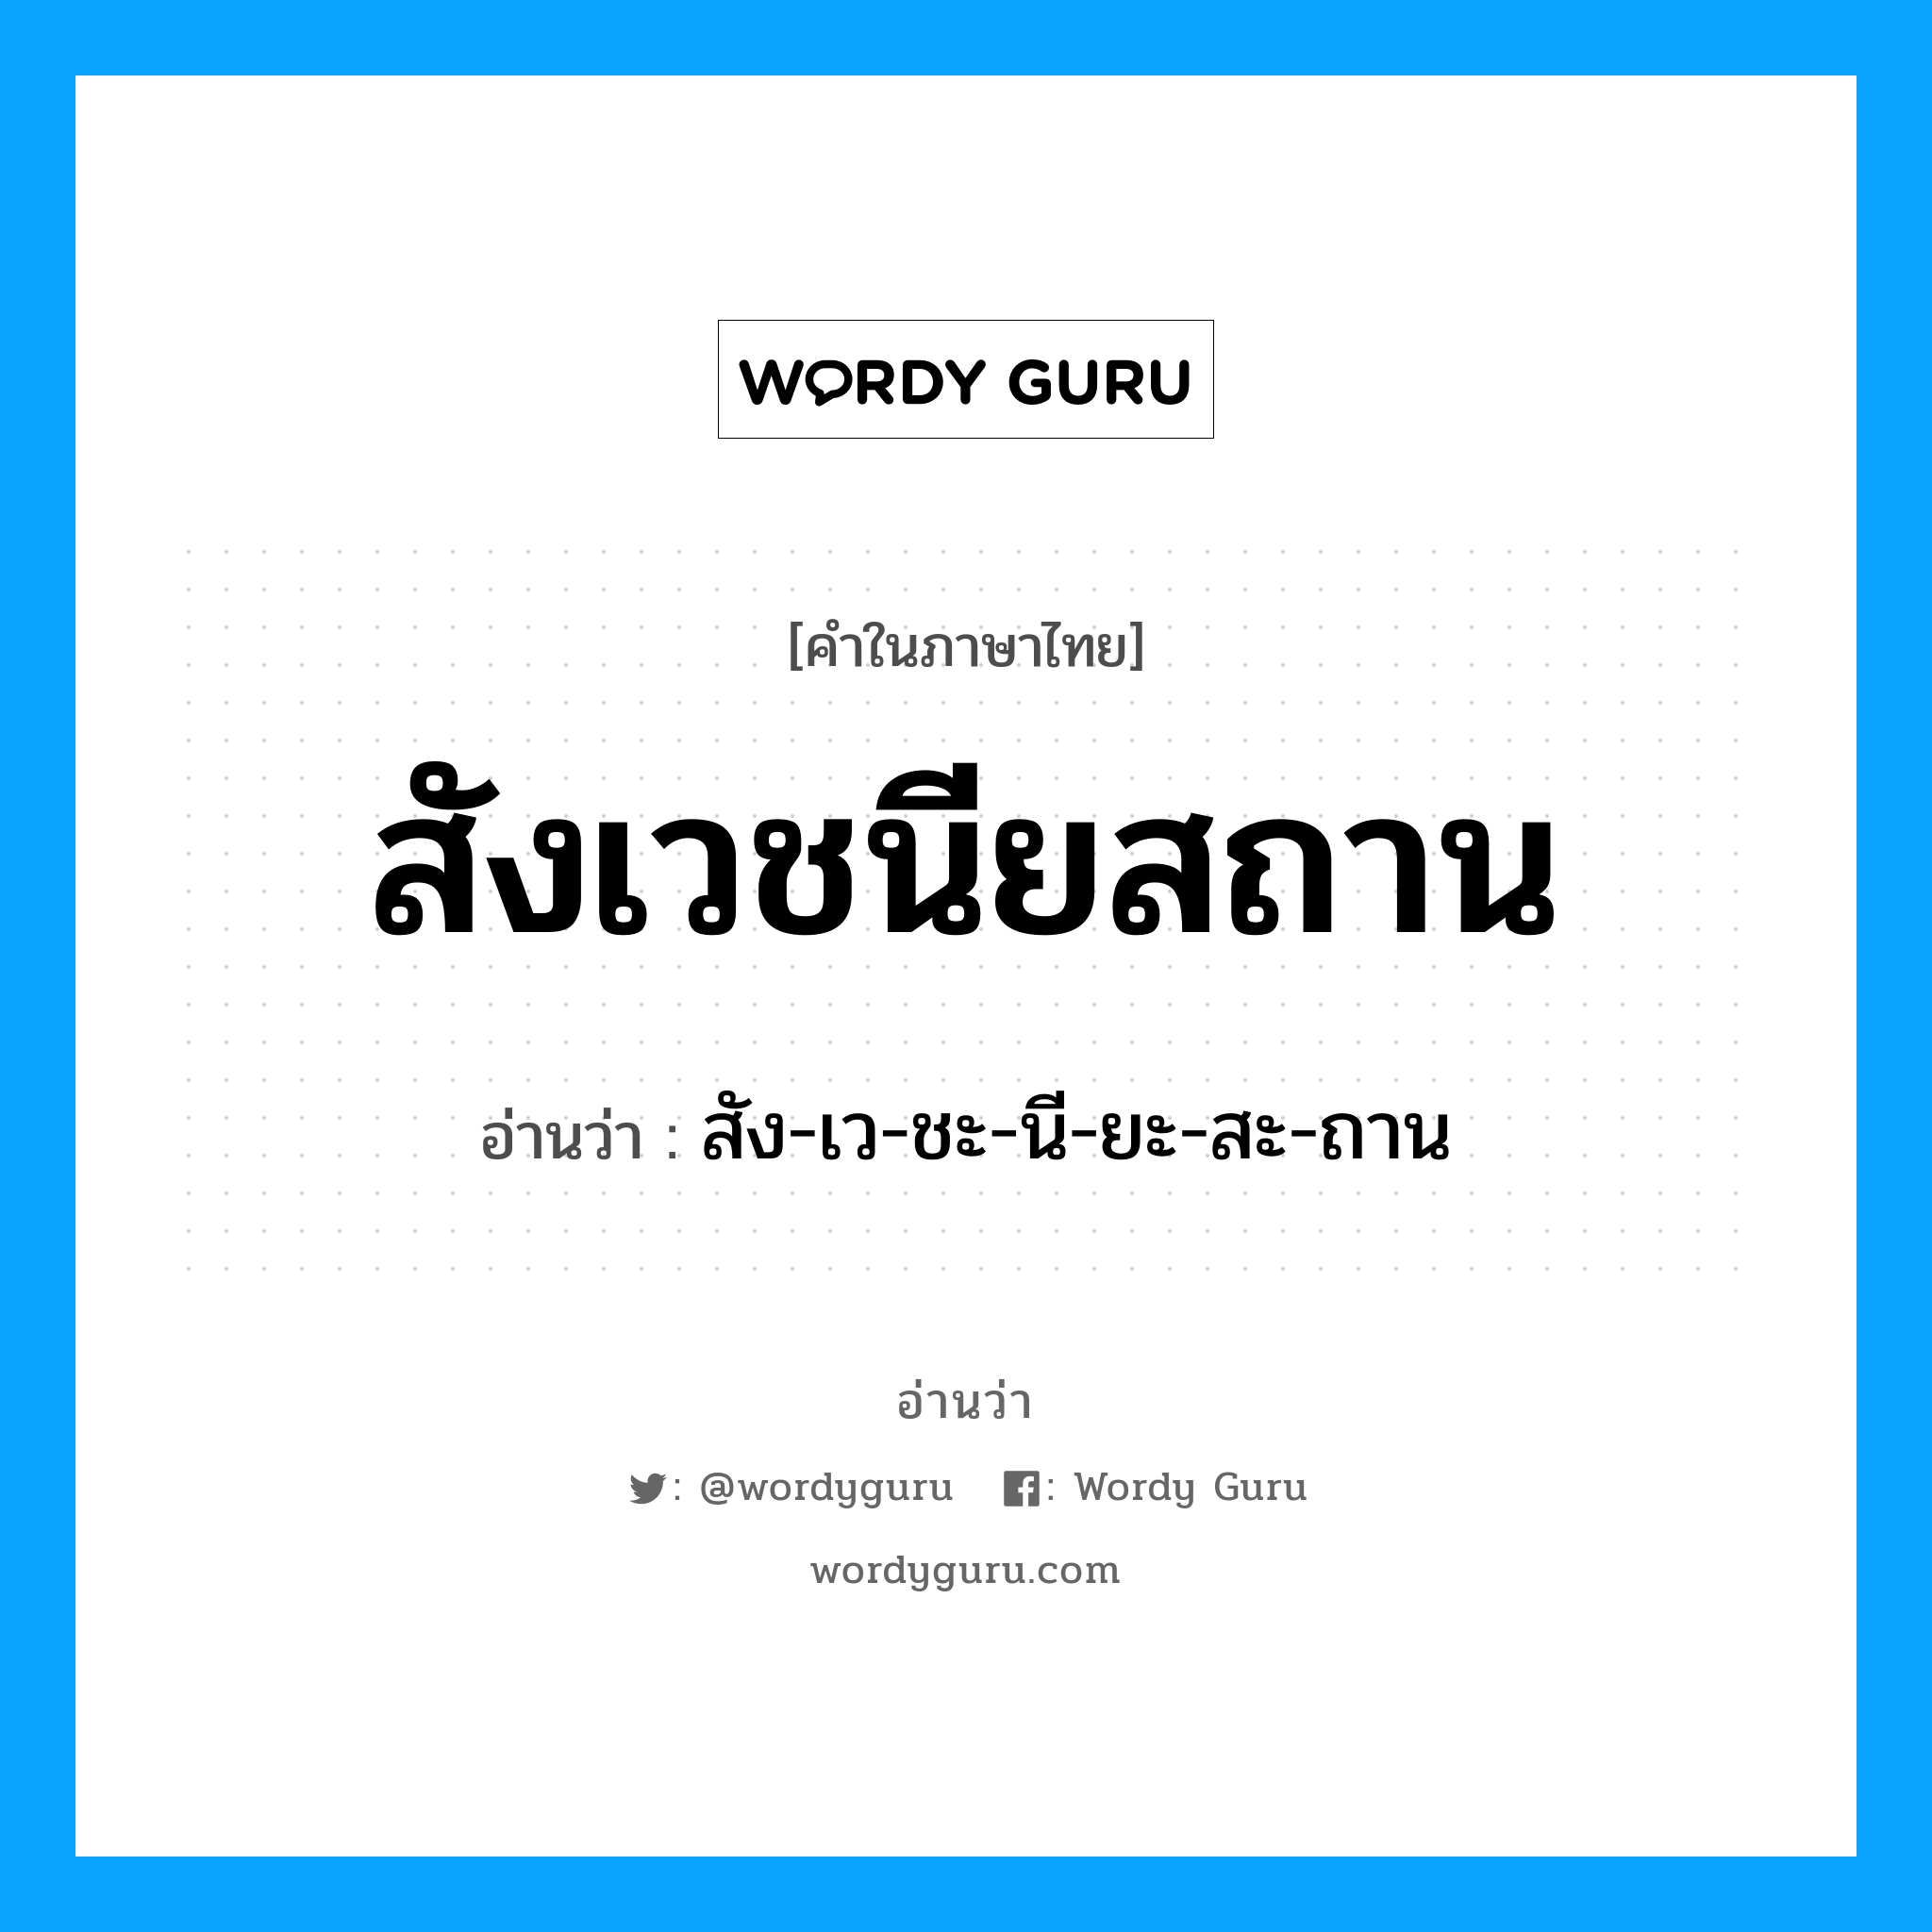 สัง-เว-ชะ-นี-ยะ-สะ-ถาน เป็นคำอ่านของคำไหน?, คำในภาษาไทย สัง-เว-ชะ-นี-ยะ-สะ-ถาน อ่านว่า สังเวชนียสถาน